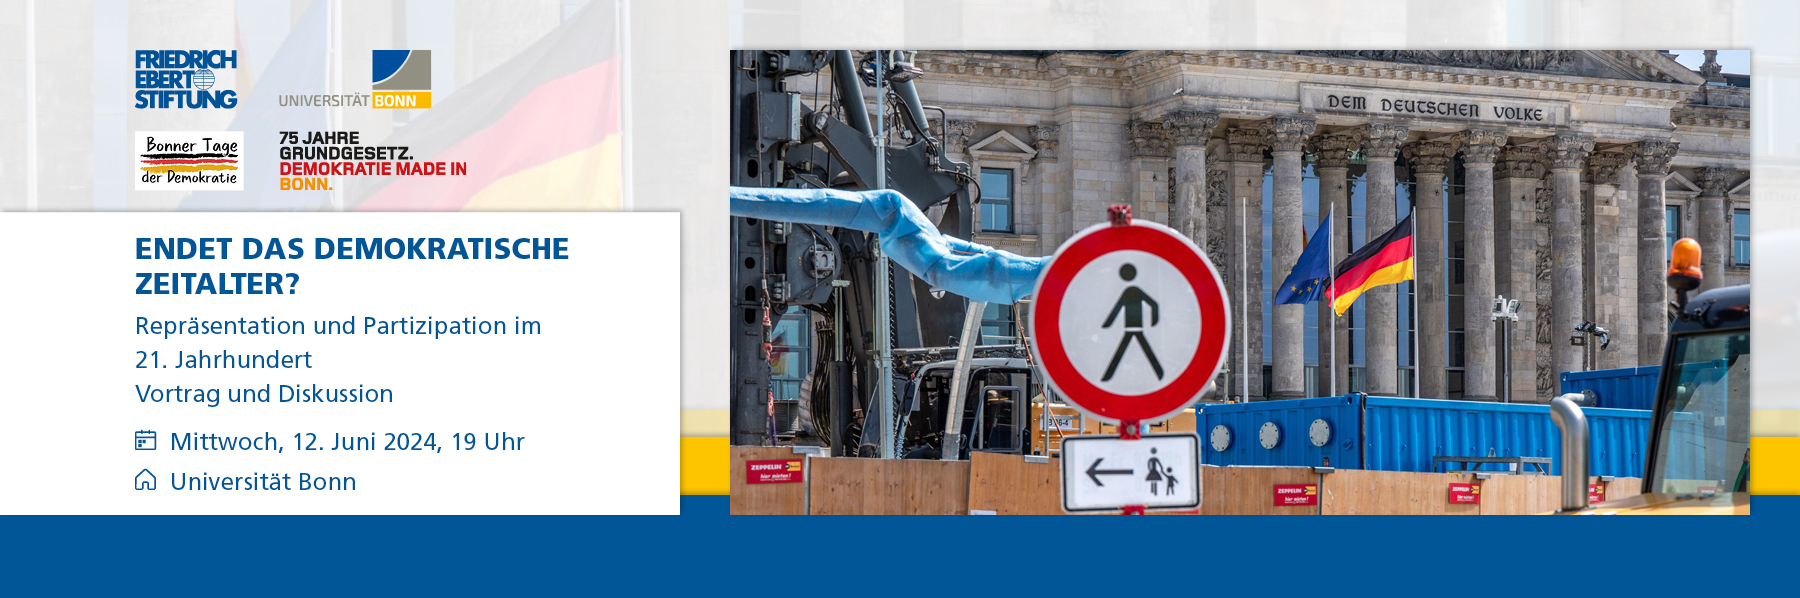 Teaser mit Veranstaltungsinfos und einem Bild, das eine Baustelle vor dem Reichstag zeigt